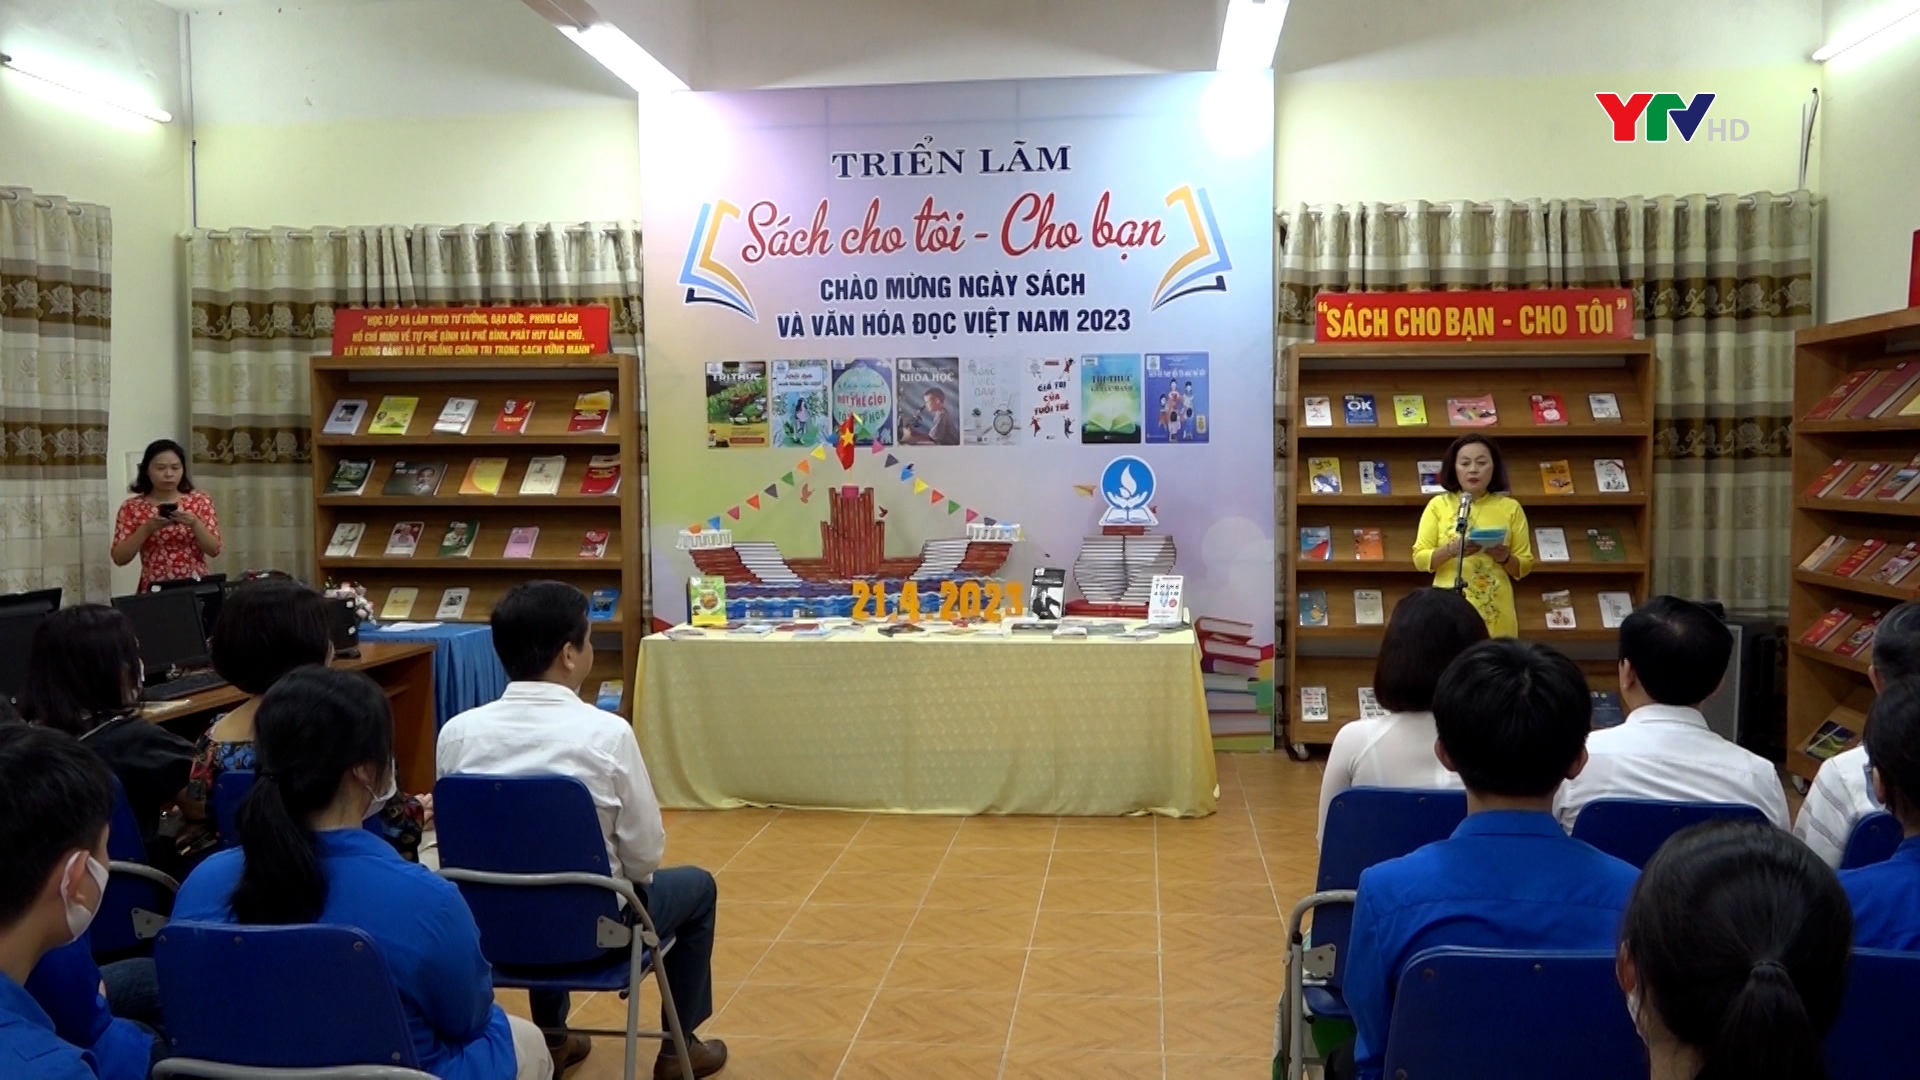 Ngày Sách và Văn hóa đọc Việt Nam năm 2023 tại Thư viện tỉnh